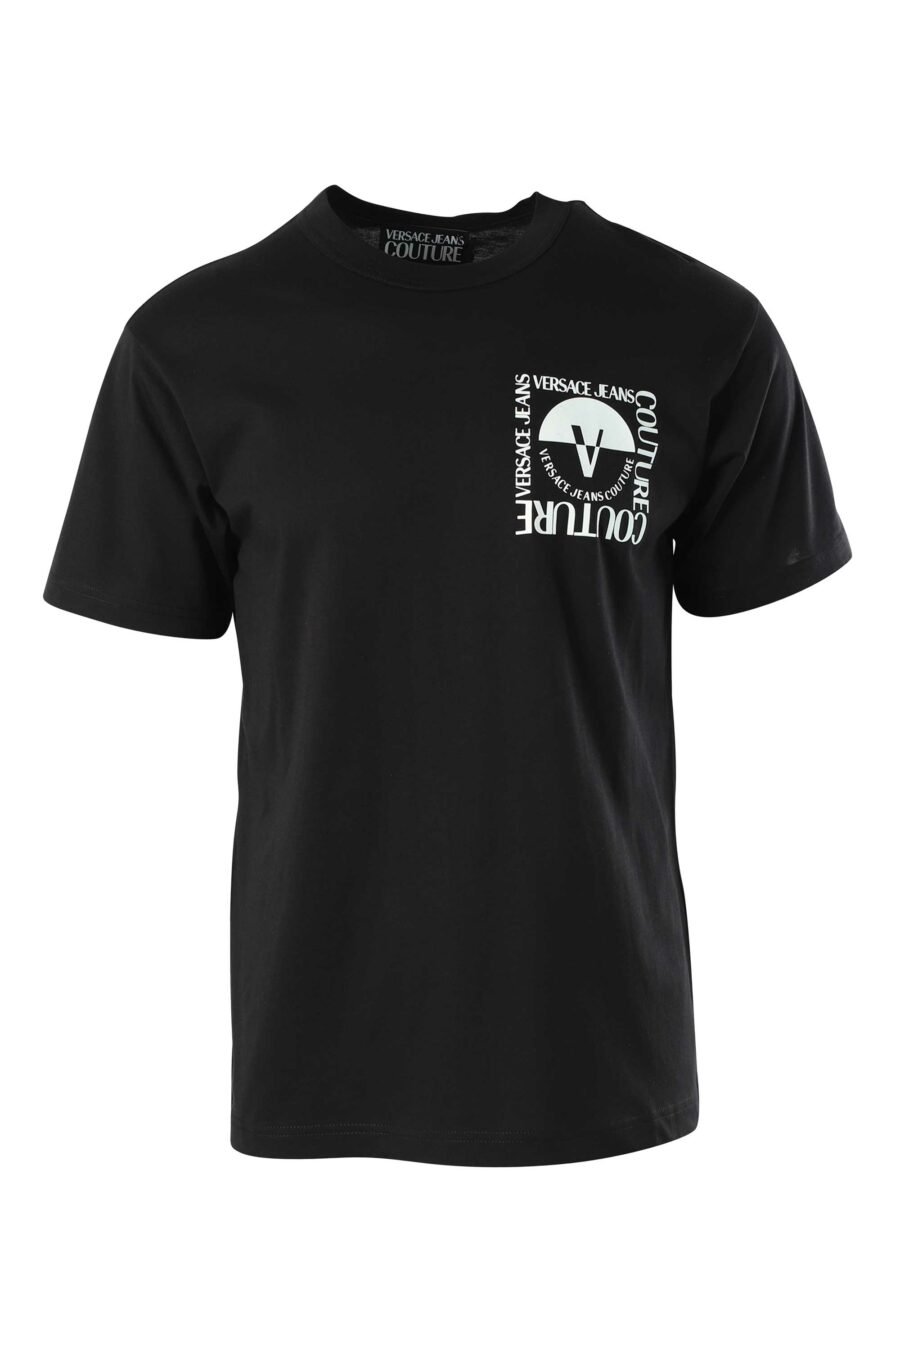 Schwarzes T-Shirt mit schwarz-weißem Minilogo - 8052019325522